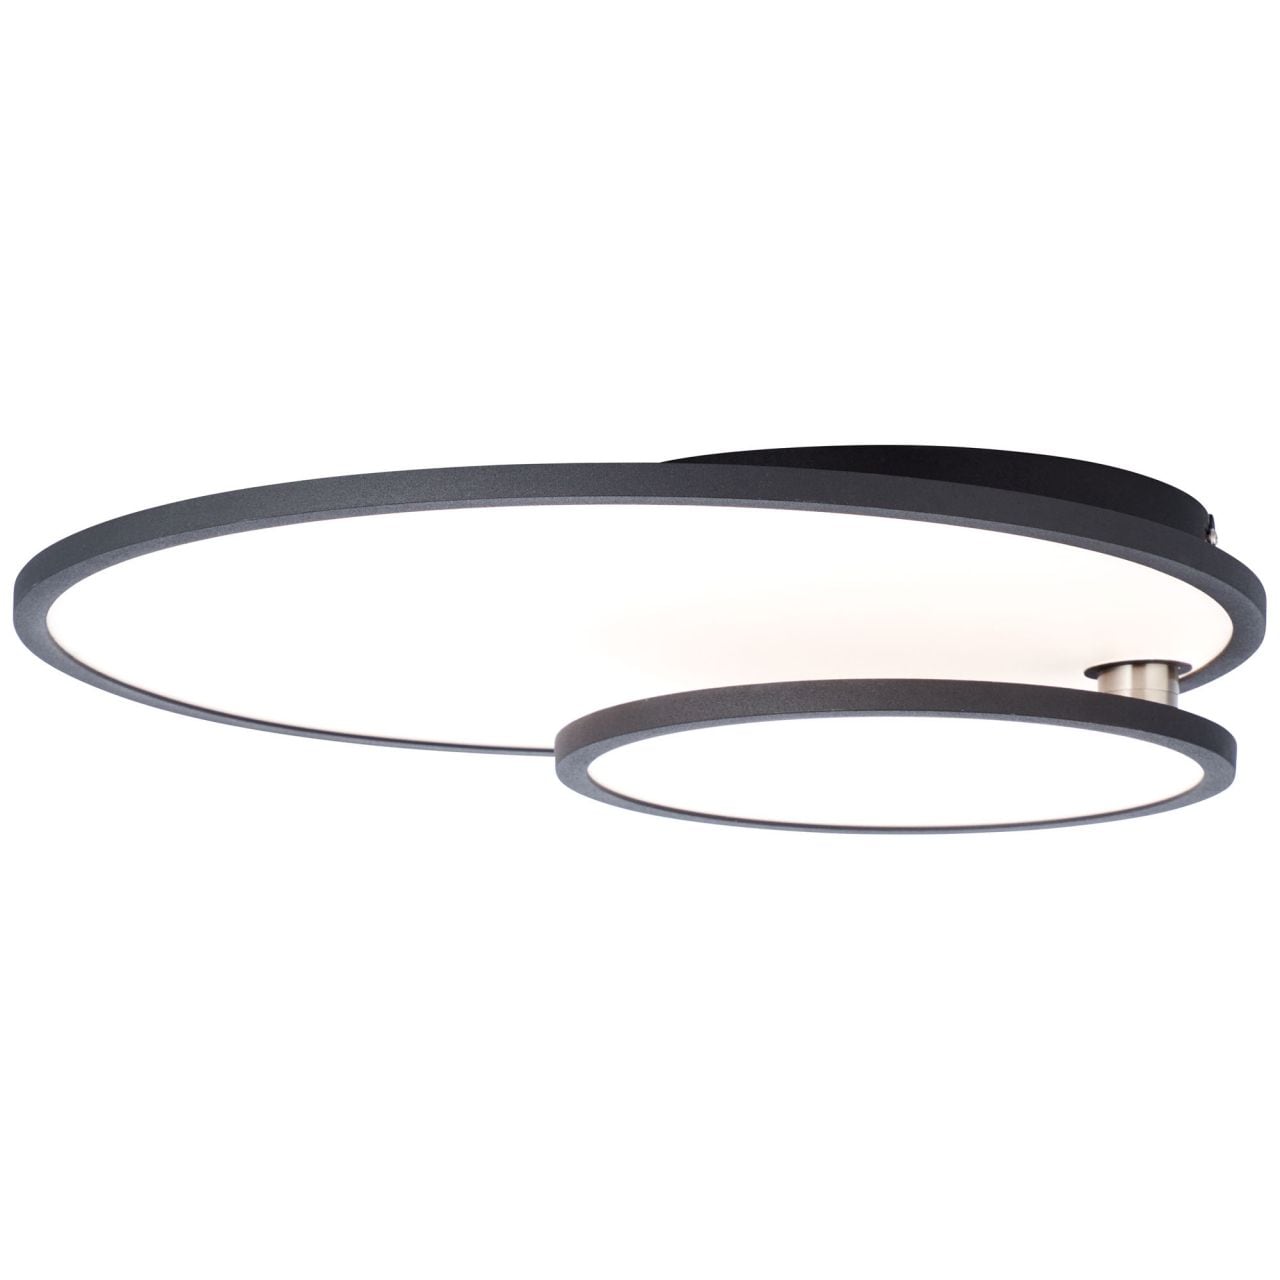 BRILLIANT Lampe Bility LED Deckenaufbau-Paneel 61x45cm schwarz/weiß easyDim   1x 36W LED integriert, (3960lm, 3000K)   E